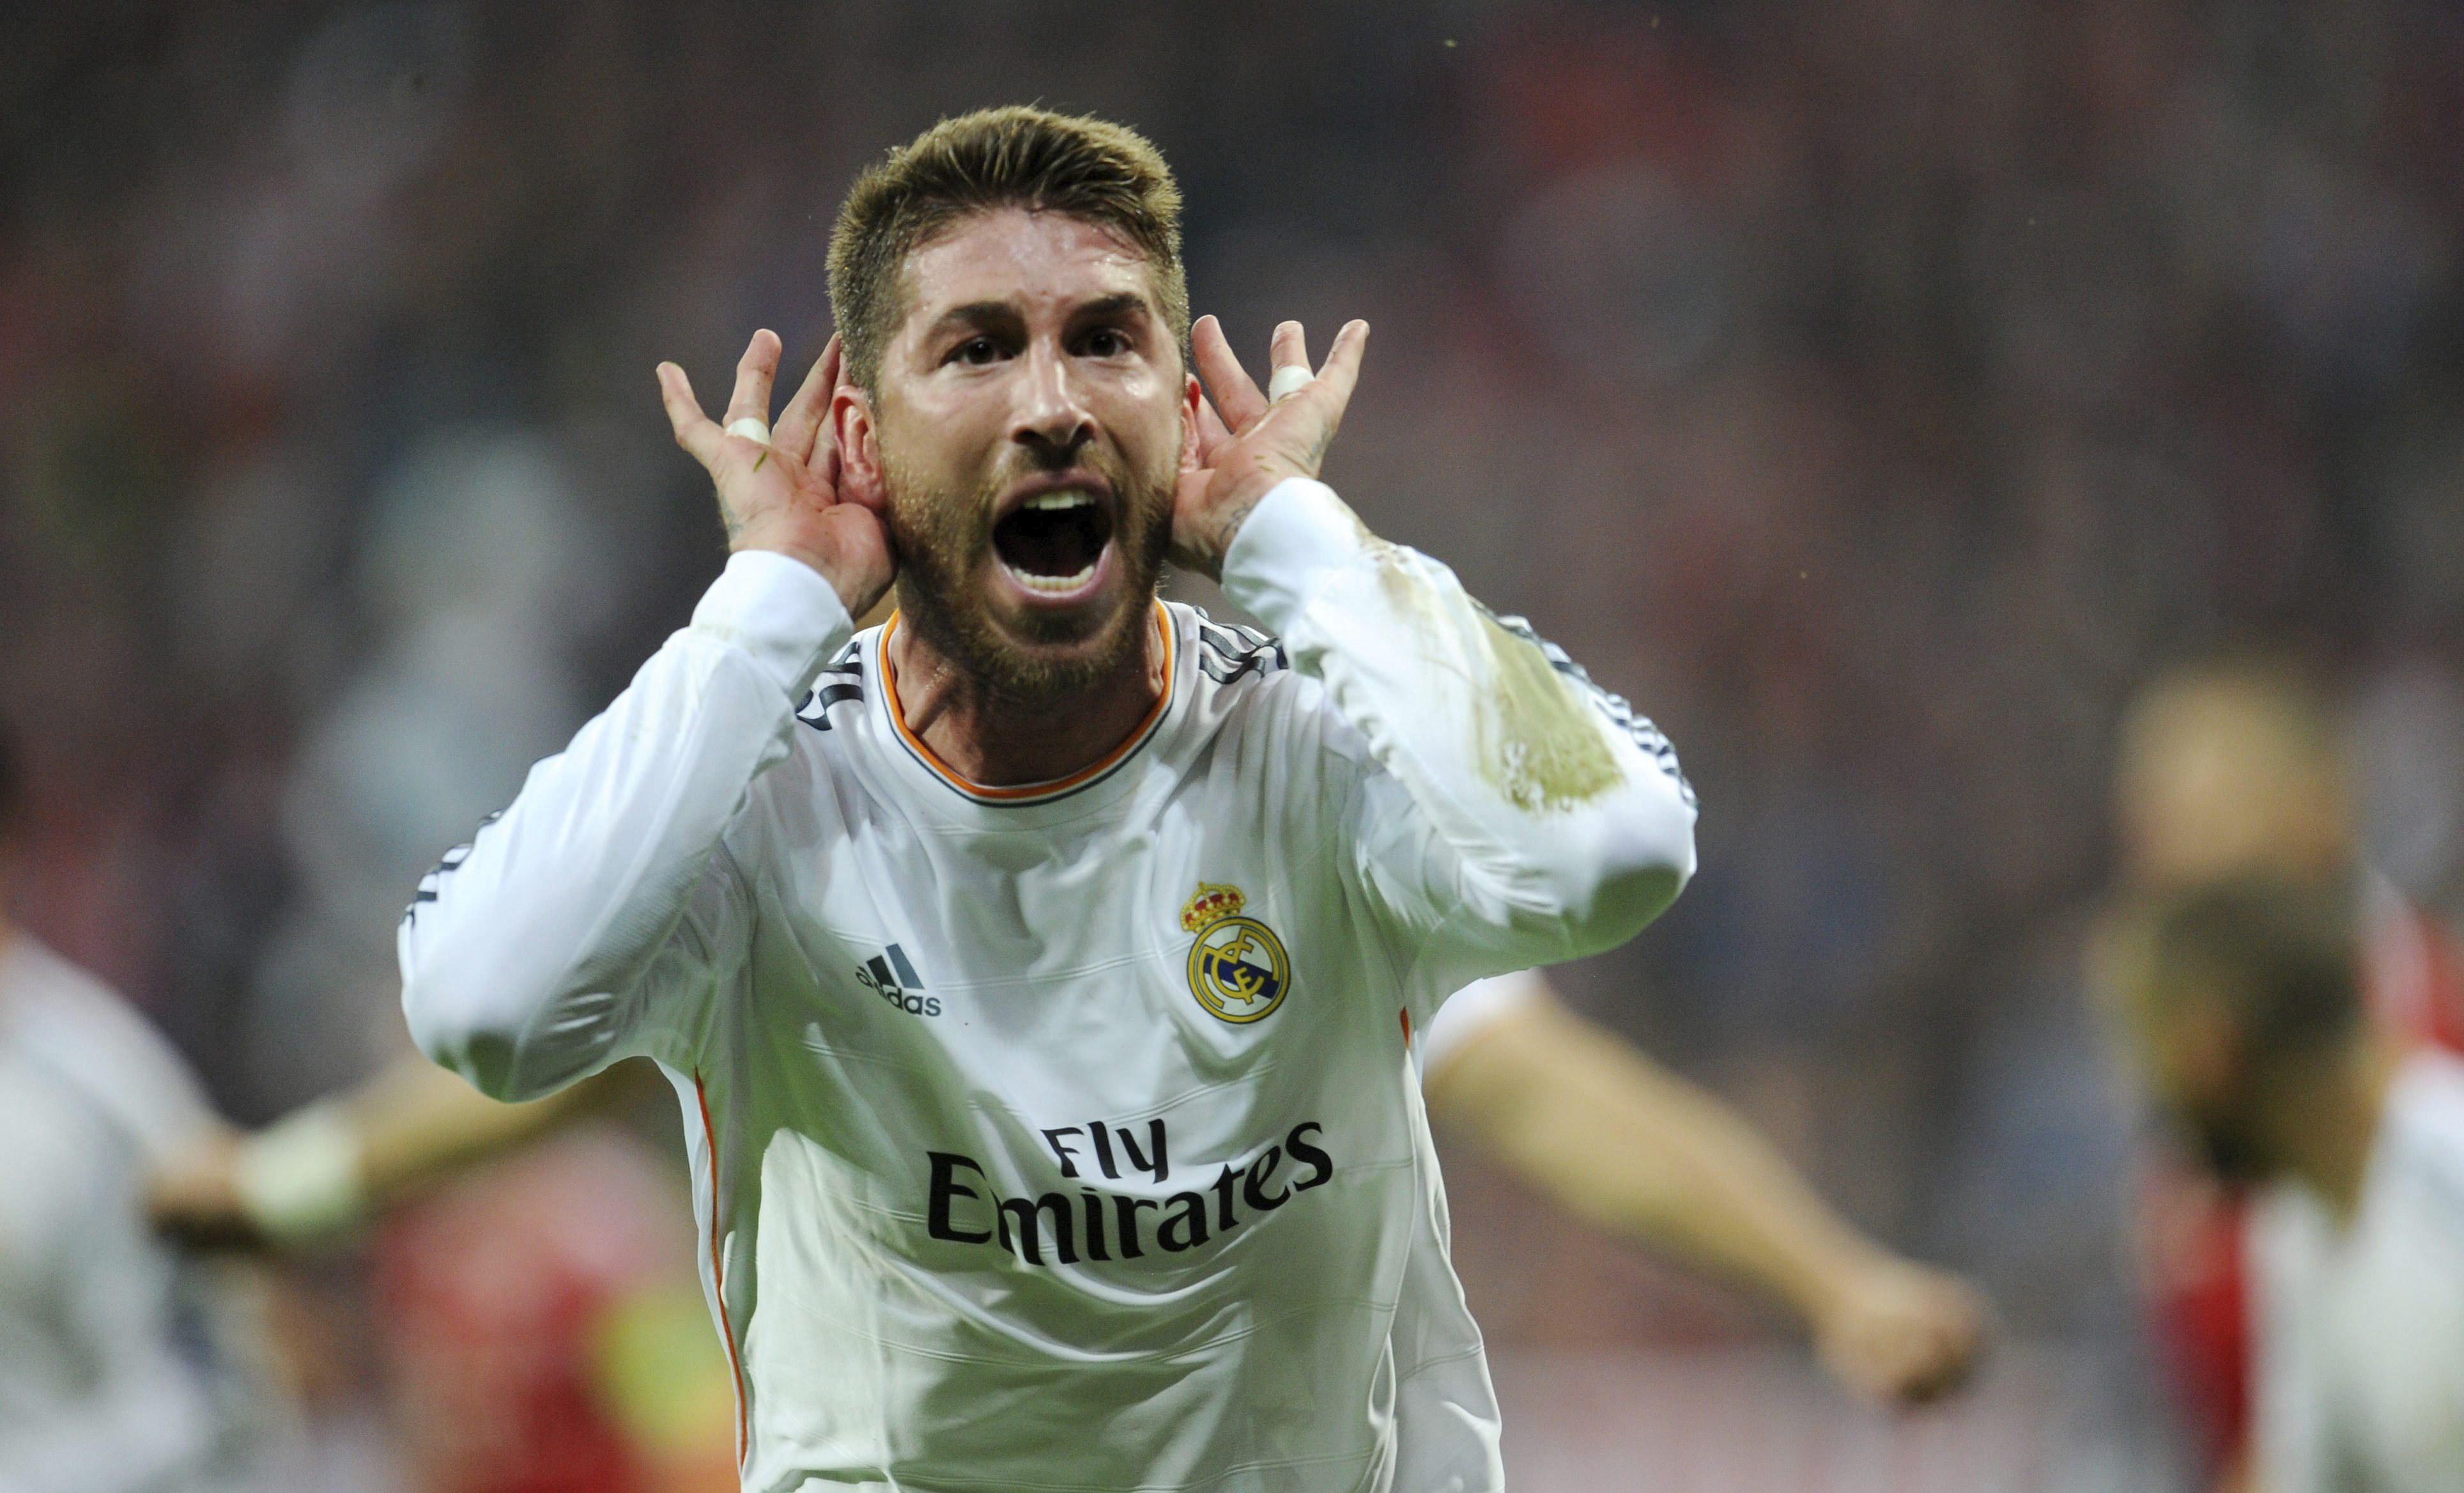 El trío Iker-Ramos-Cristiano Ronaldo hacen que el Real Madrid sea el favorito